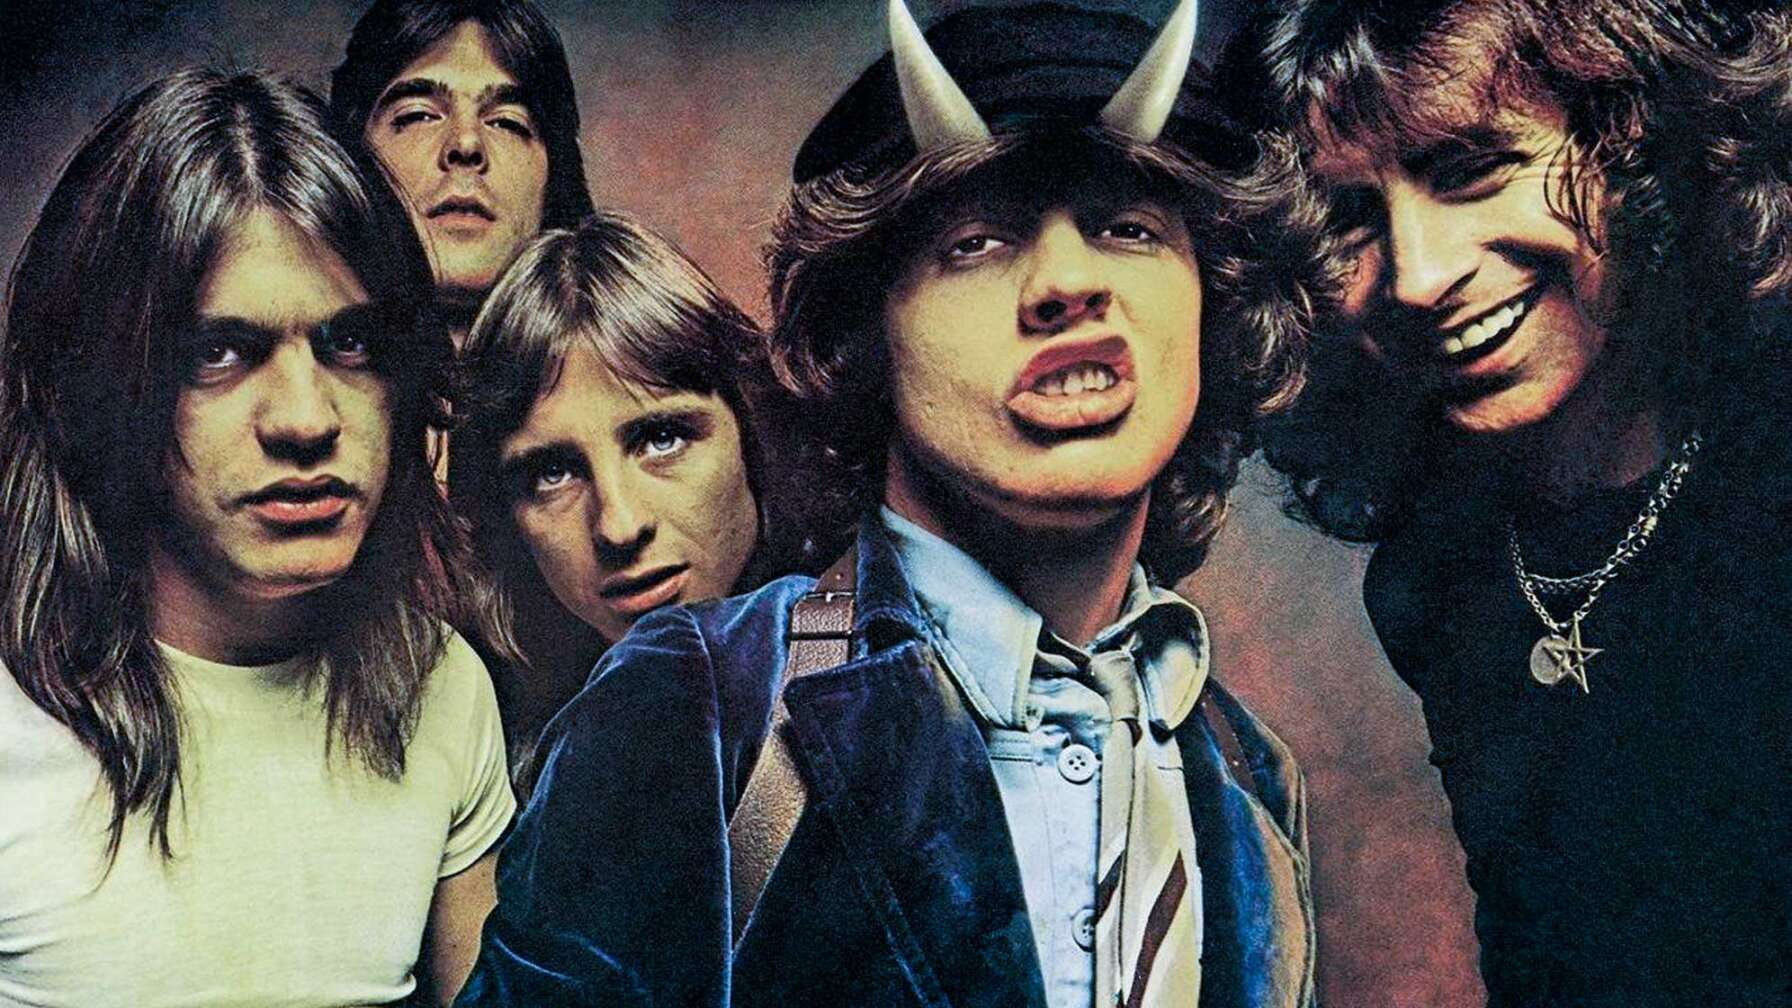 Das Albumcover von "Highway to Hell" von AC/DC.